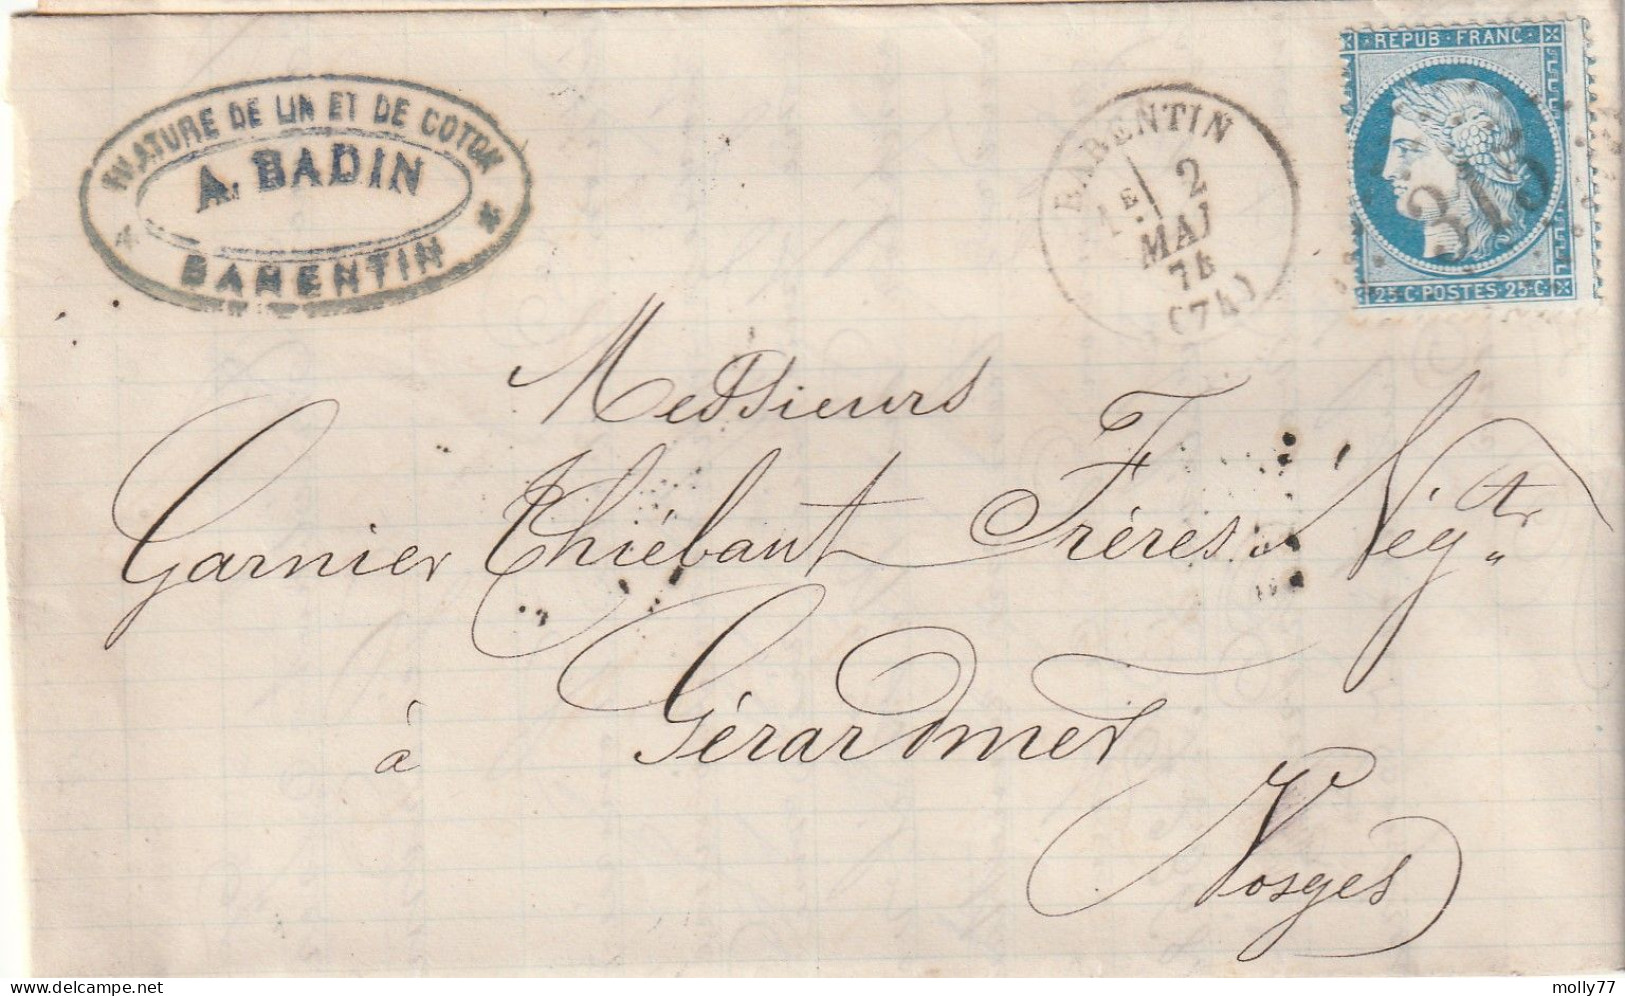 Lettre De Barentin à Gérardmer LAC - 1849-1876: Klassik